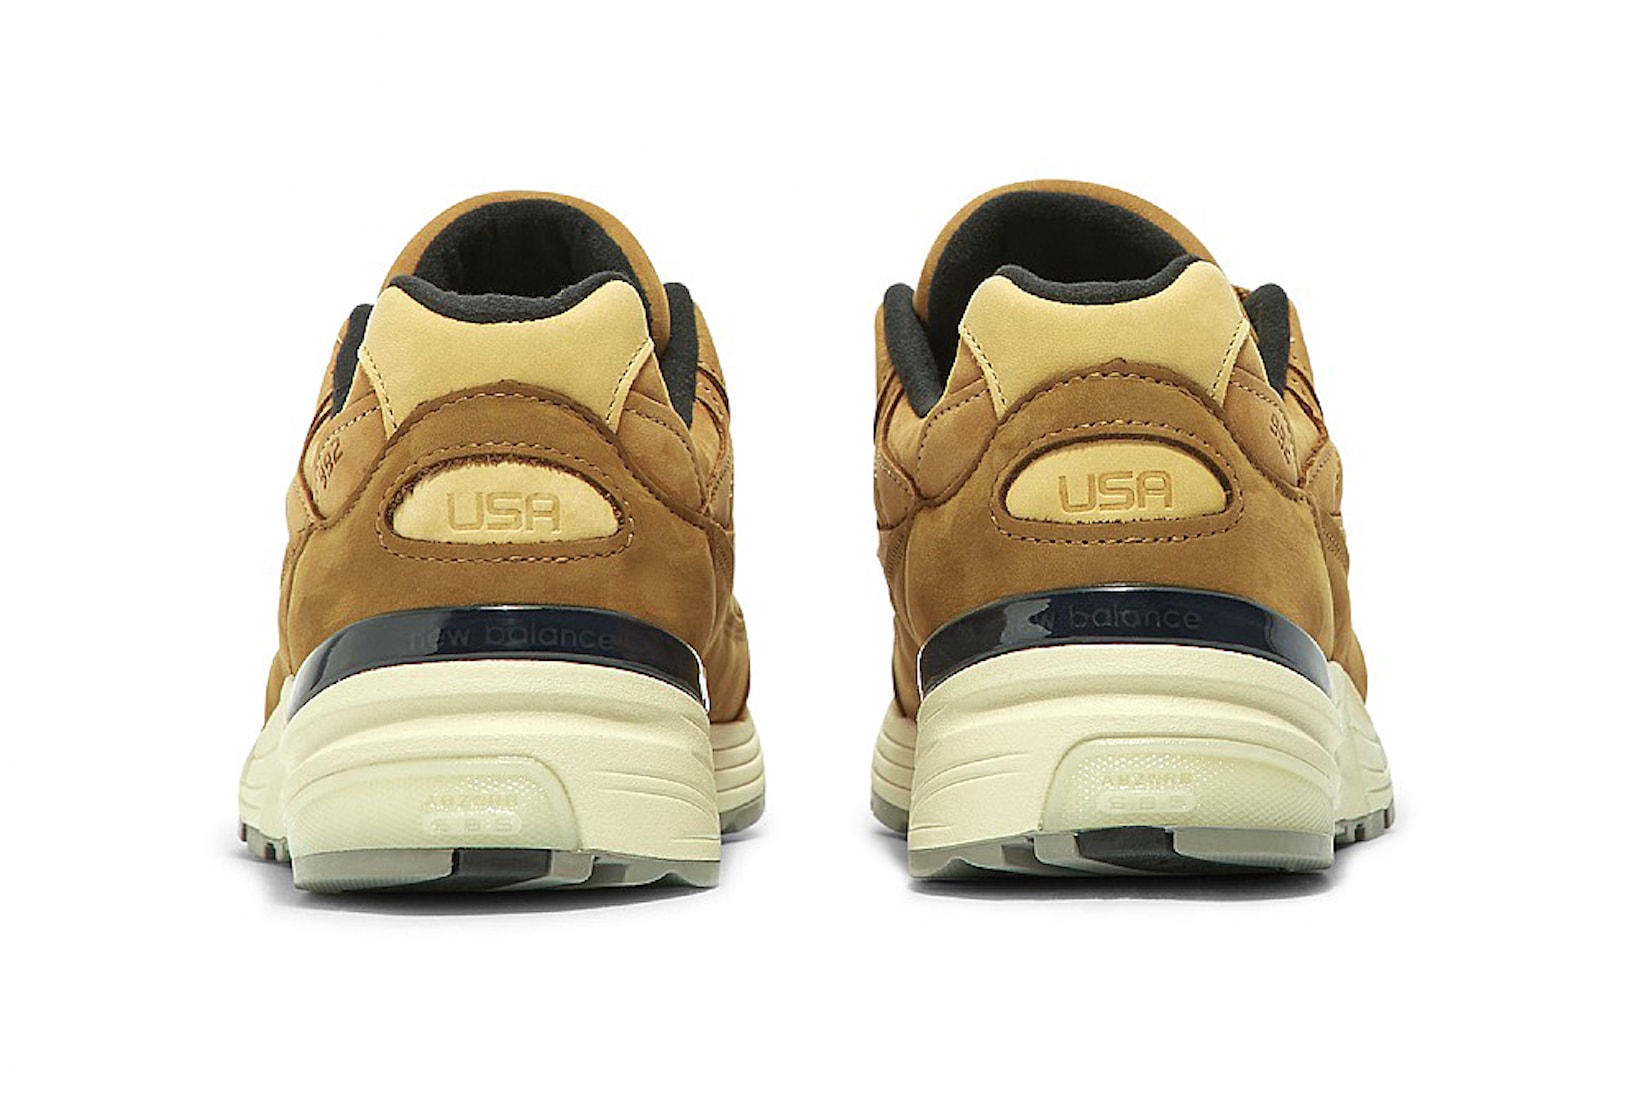 new balance 992 gold brown white sneakers footwear shoes kicks sneakerhead heel